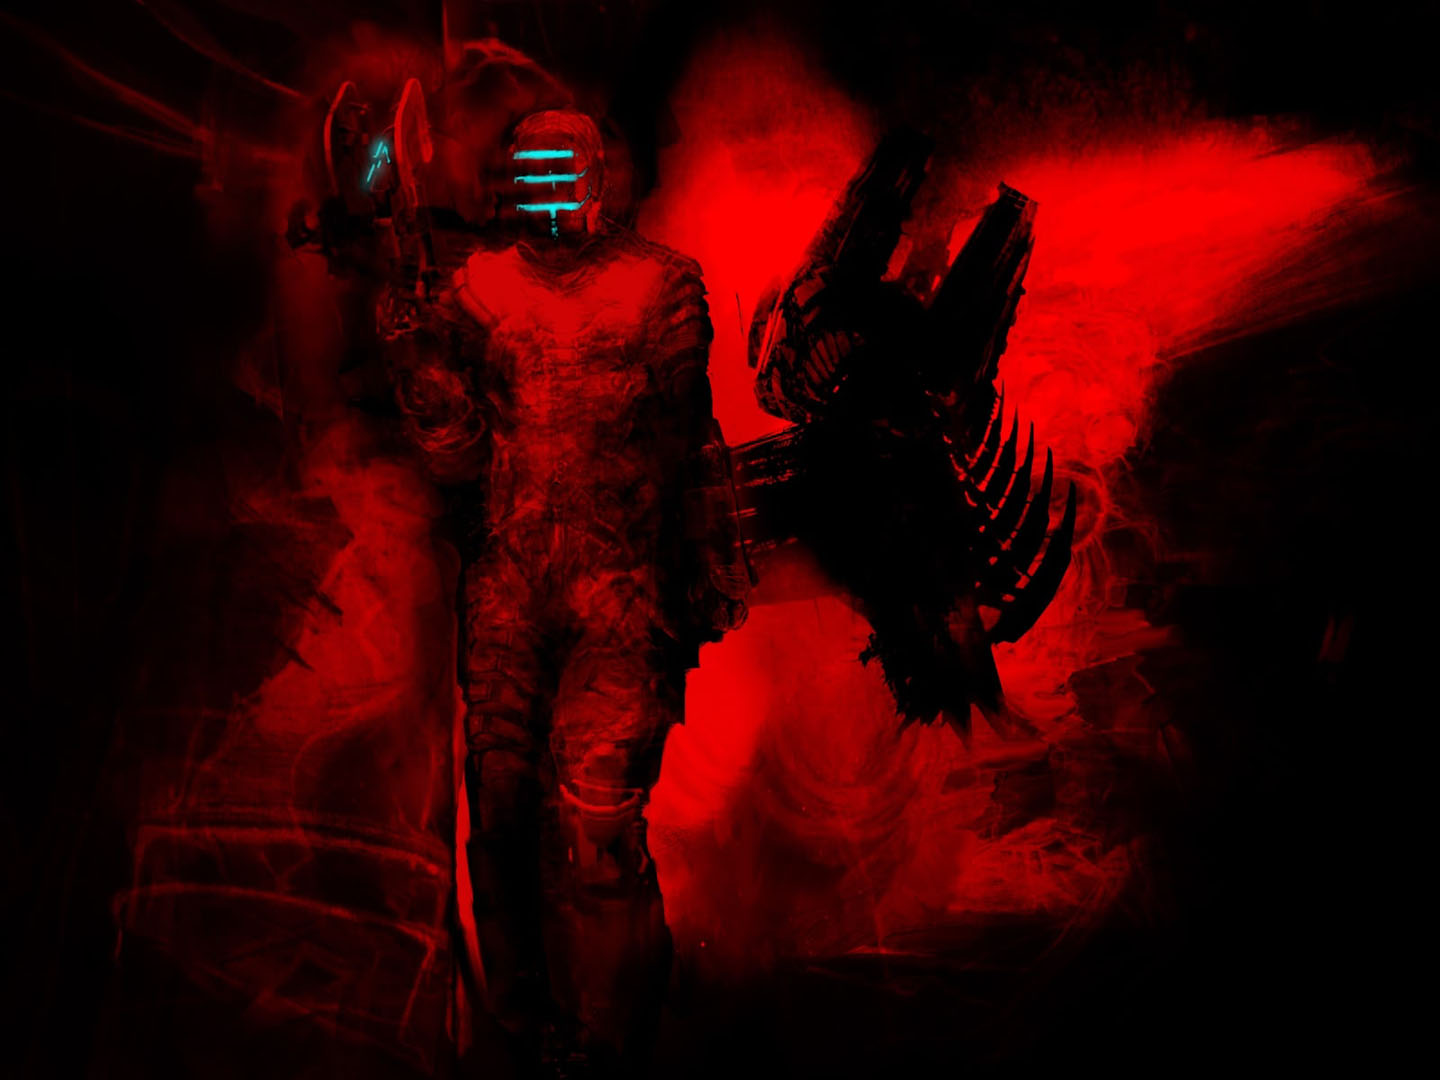 Drowned In Red - Dead Space 2 Wallpaper Hd - HD Wallpaper 